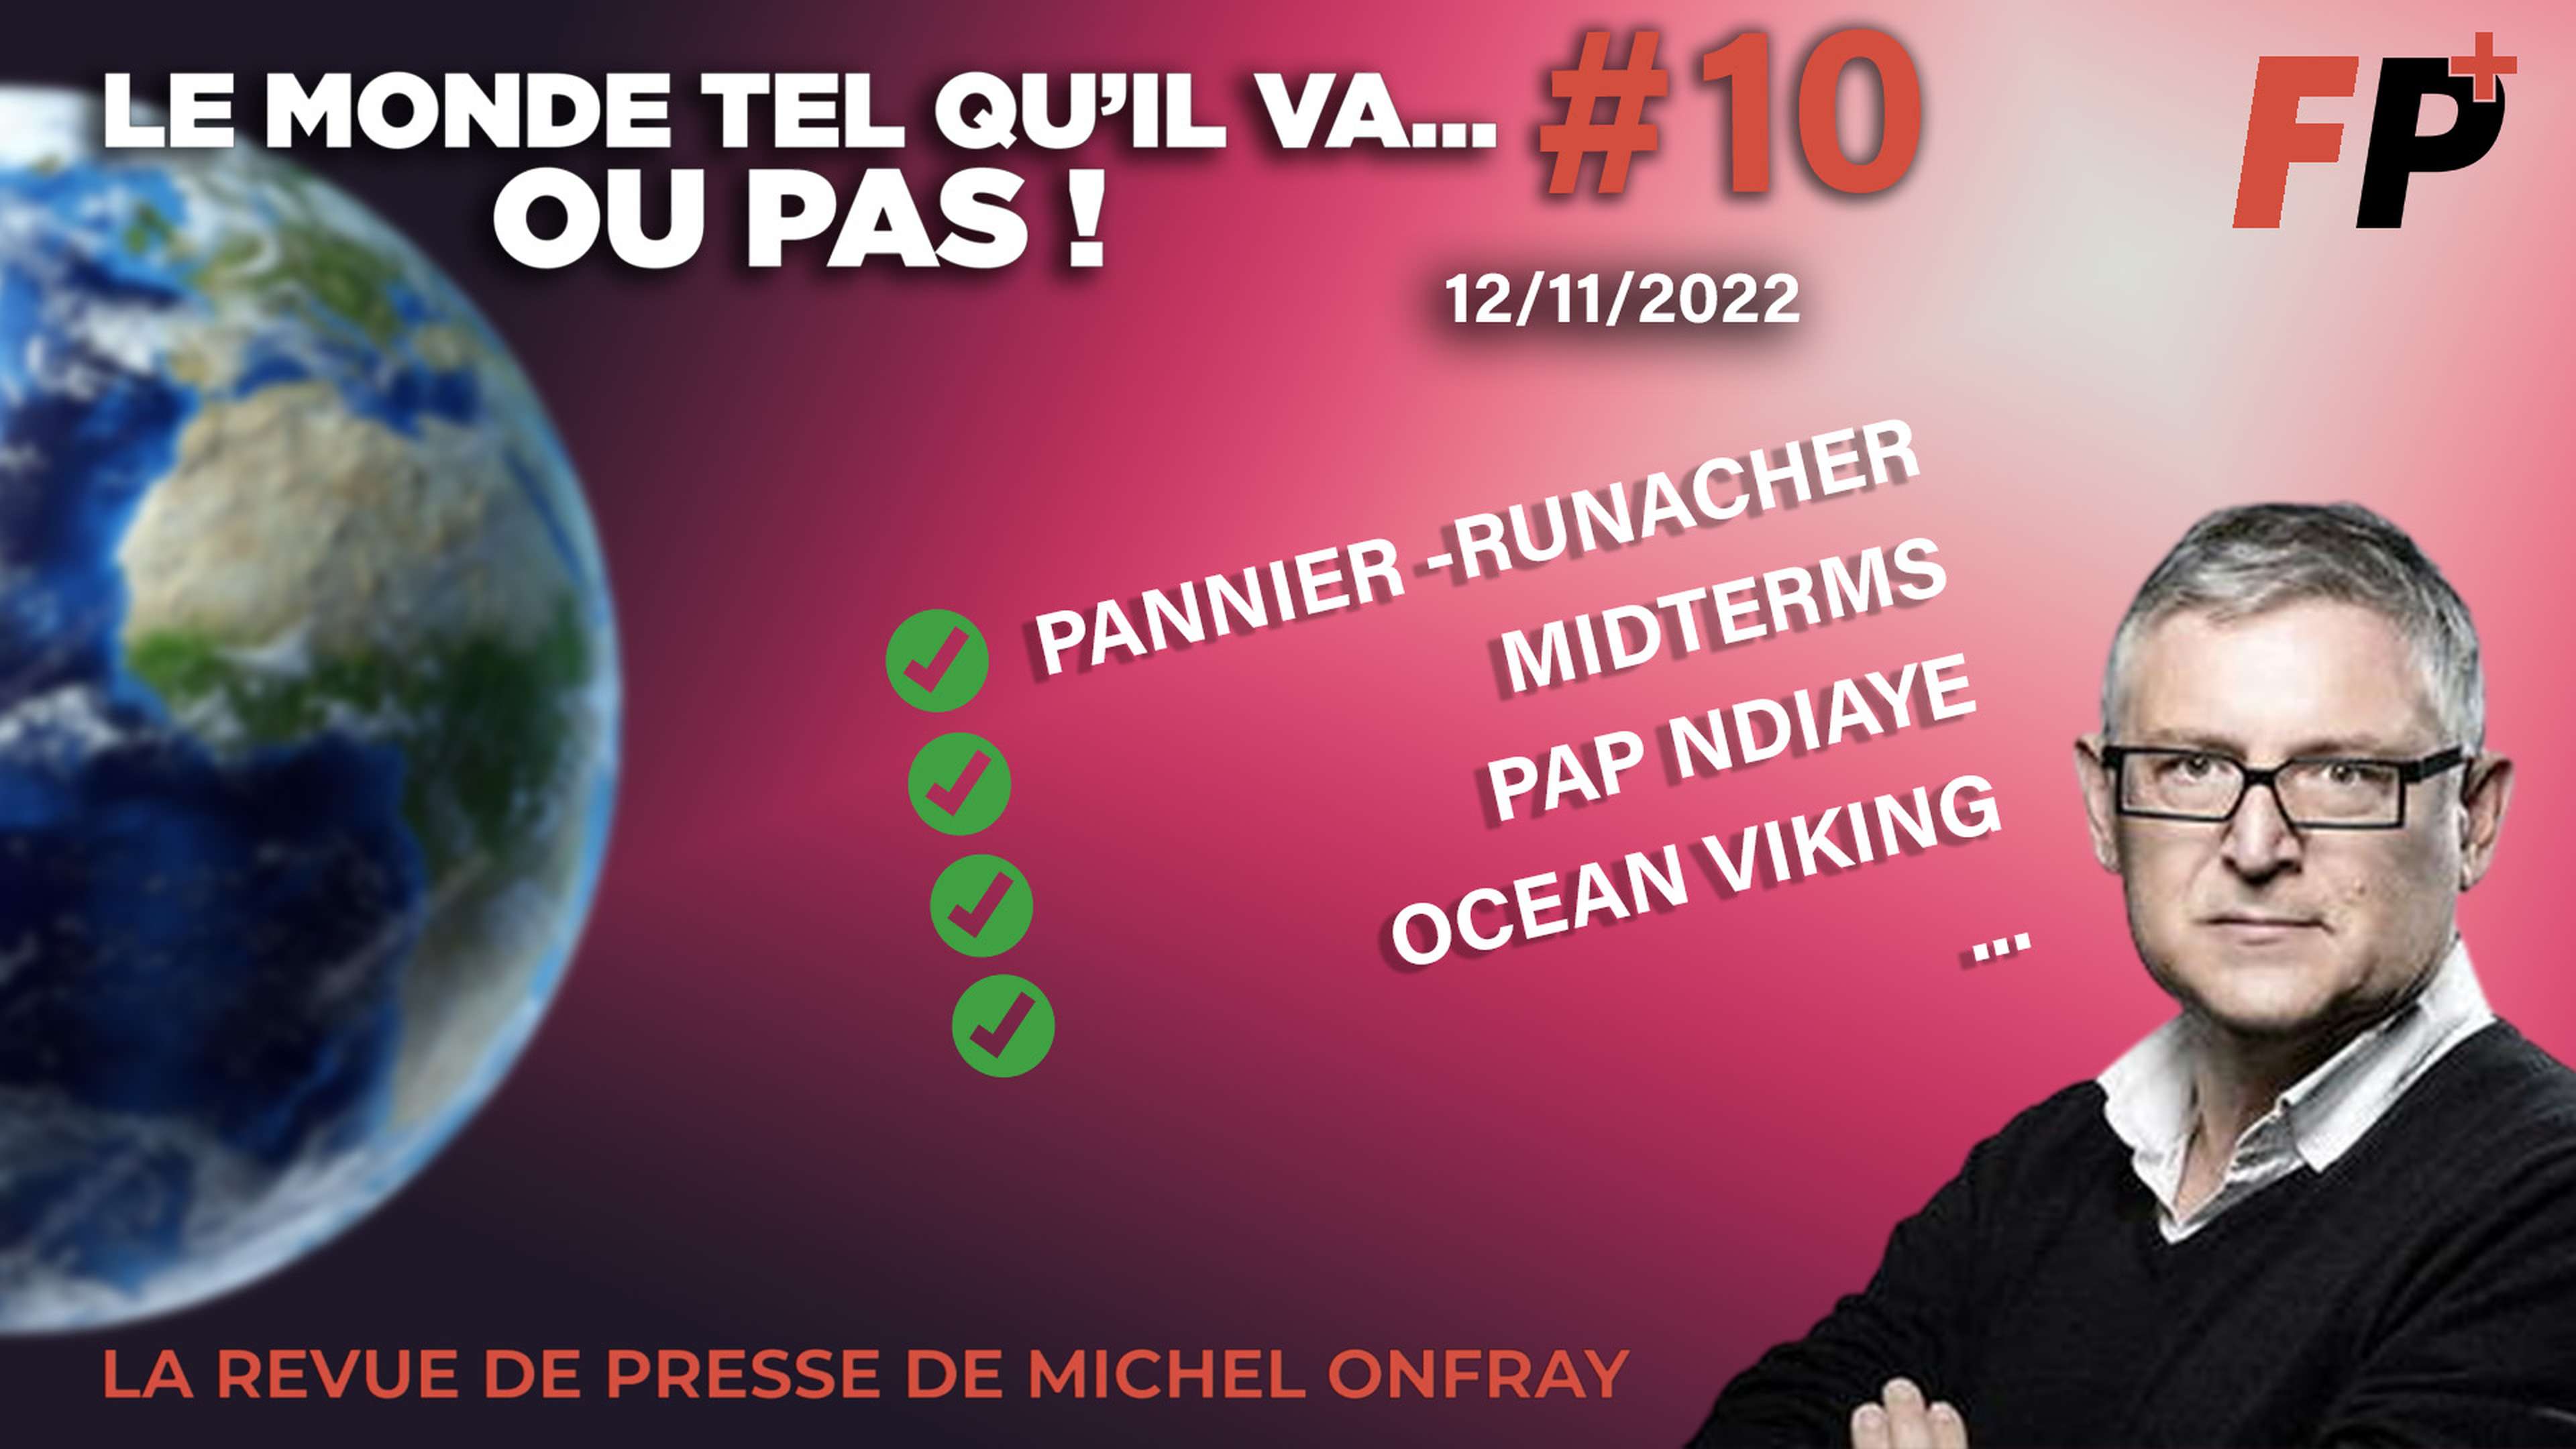 Le monde tel qu'il va… ou pas ! – la revue de presse de Michel Onfray (#10)